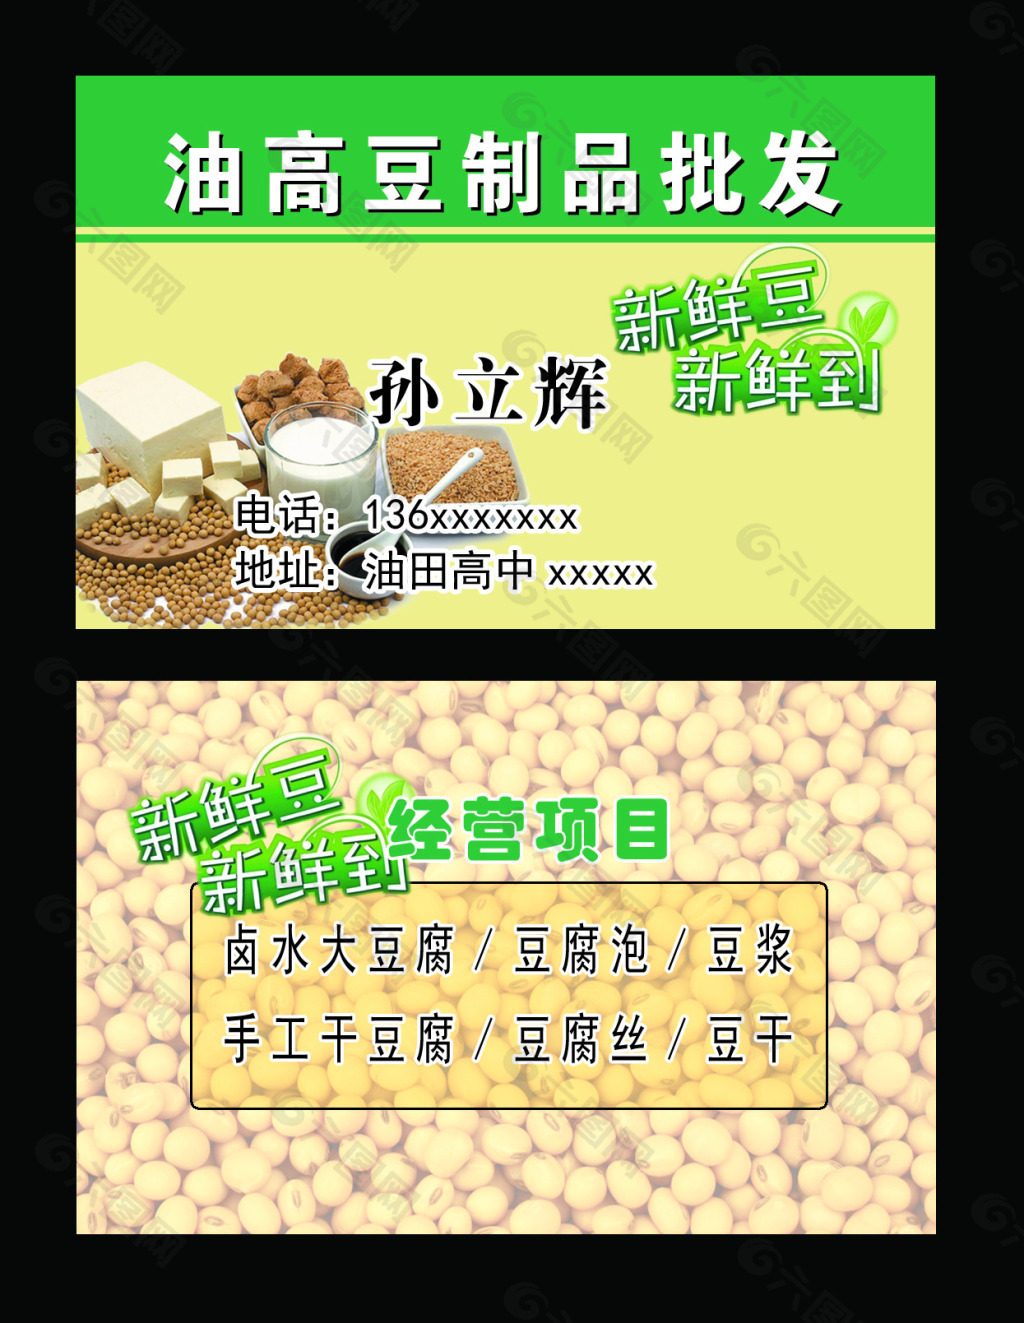 卖豆腐名片设计图图片